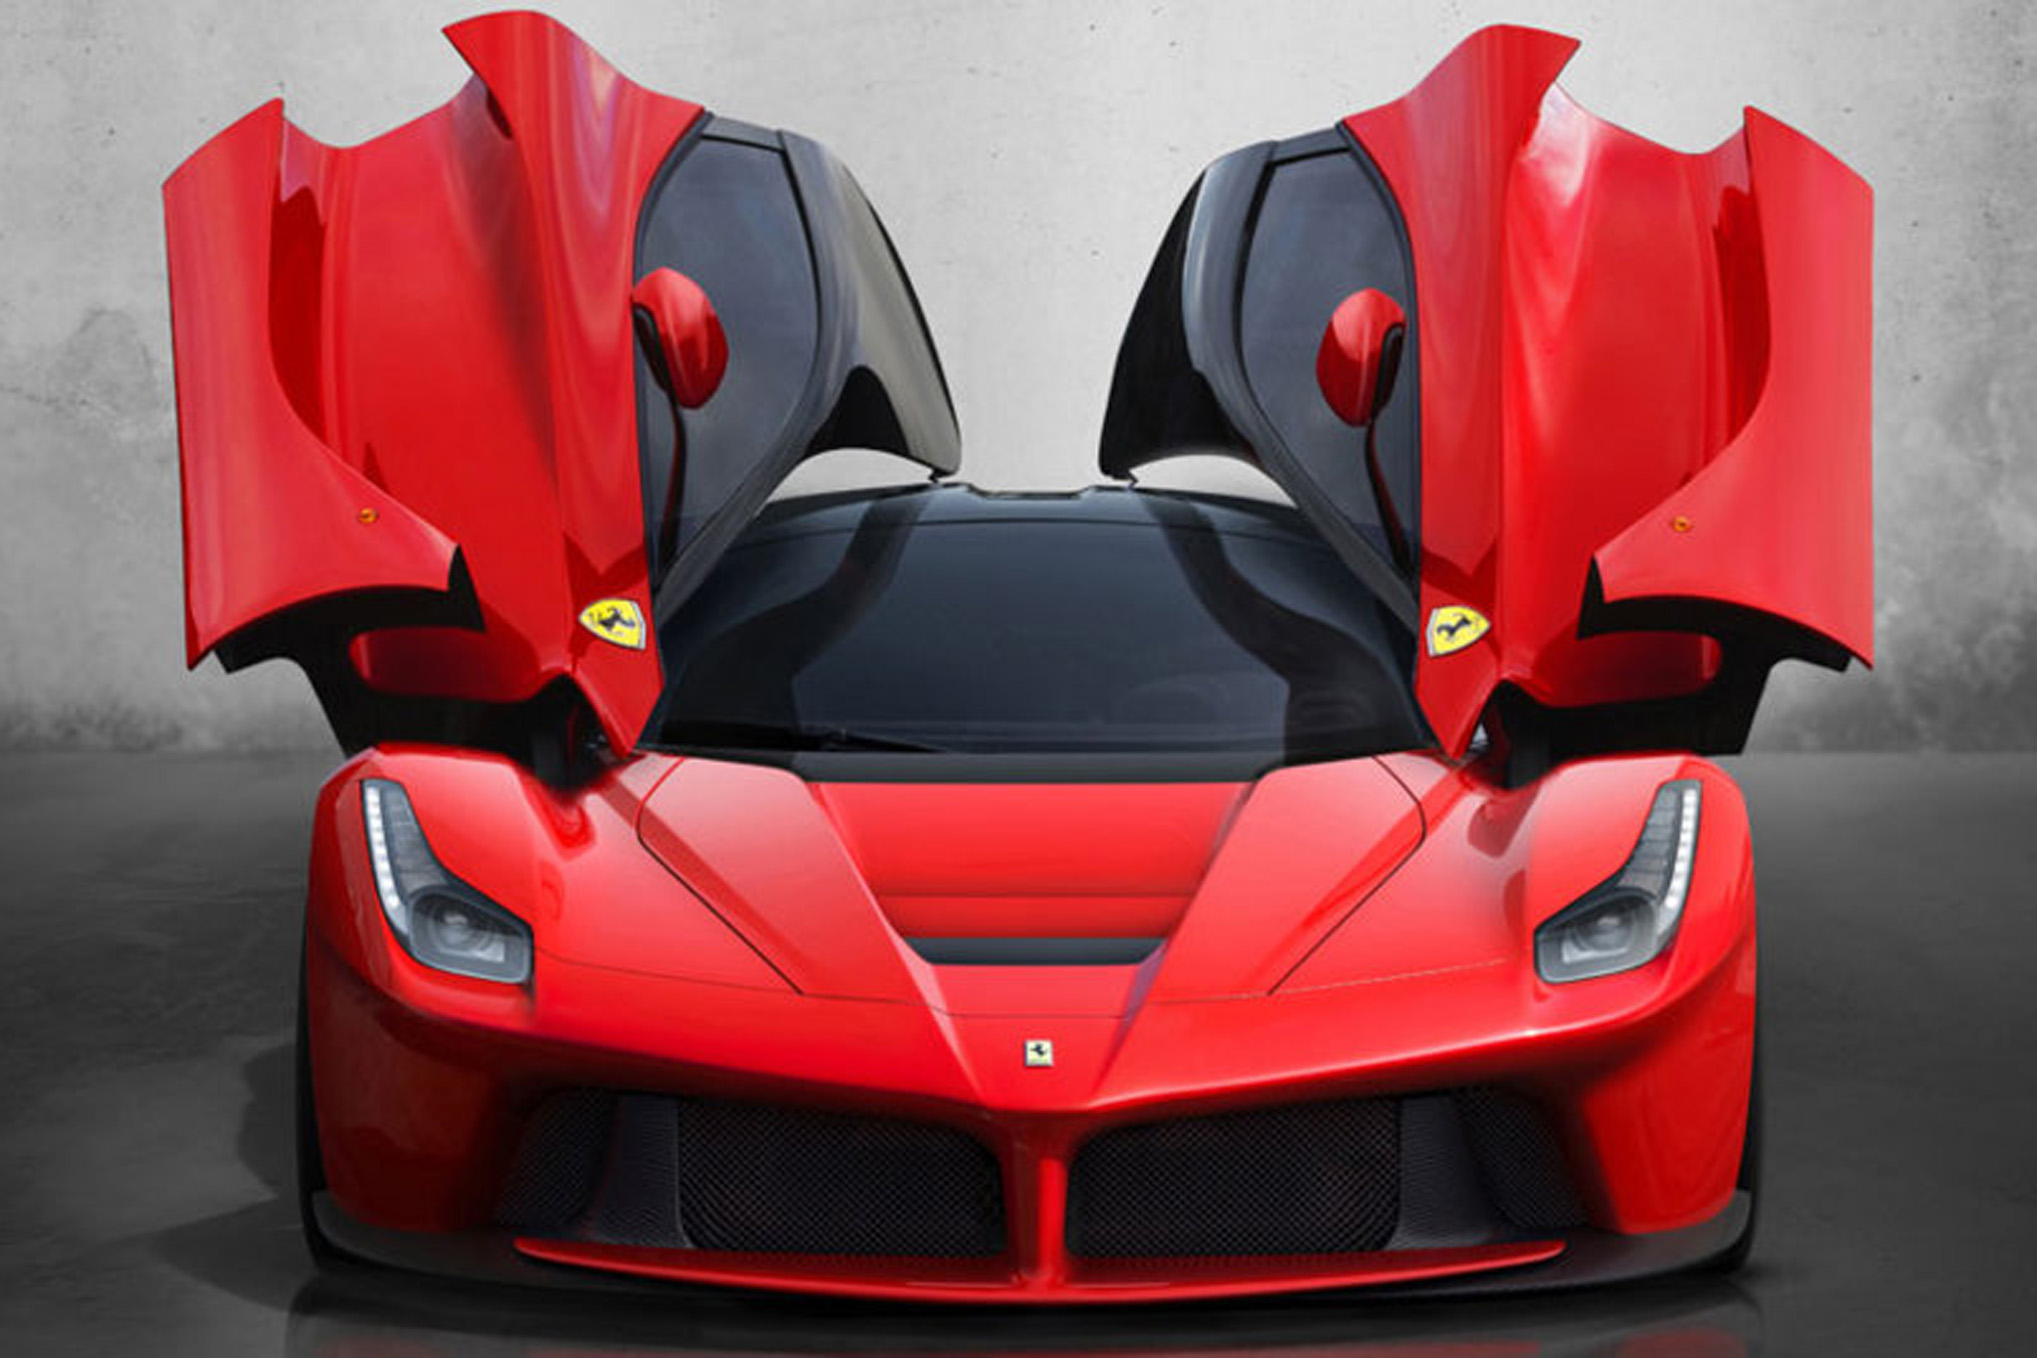 New Ferrari Laferrari Cars Prices Overview